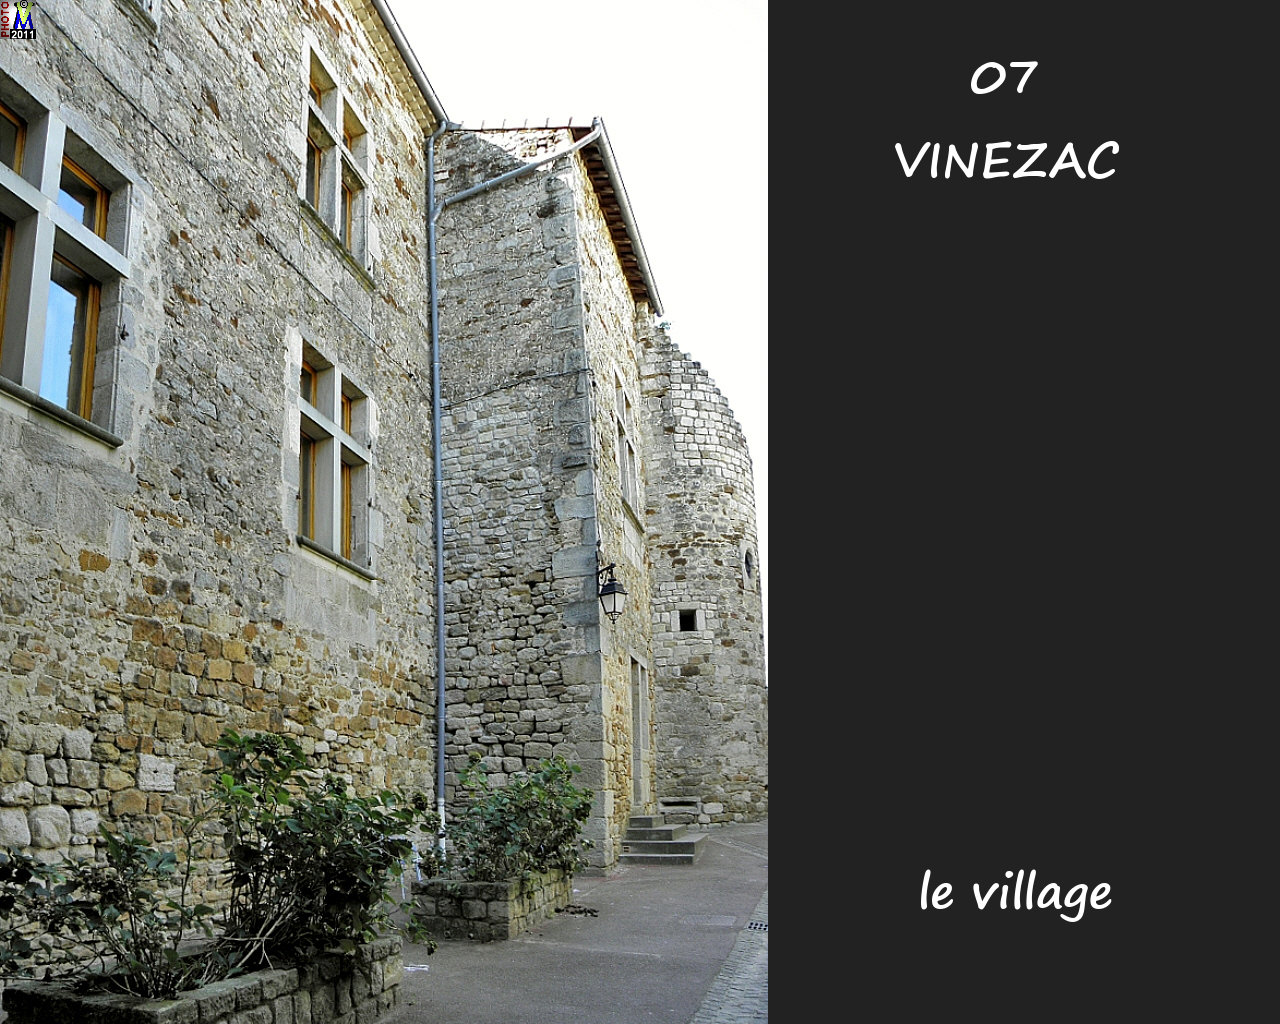 07VINEZAC_village_142.jpg